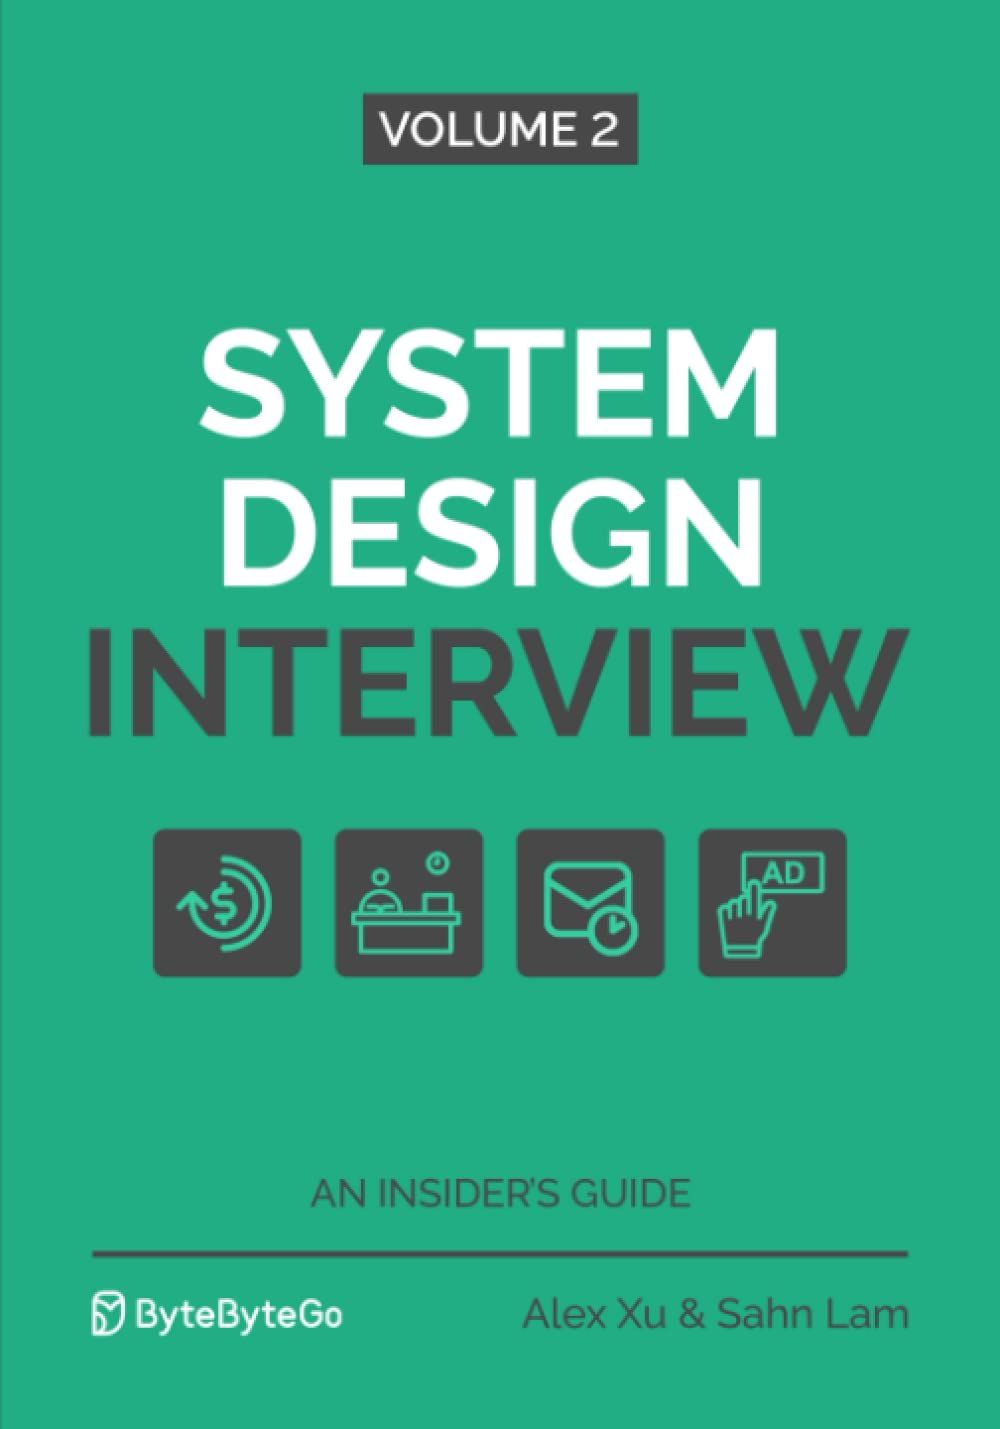 System Design Interview Volume 2